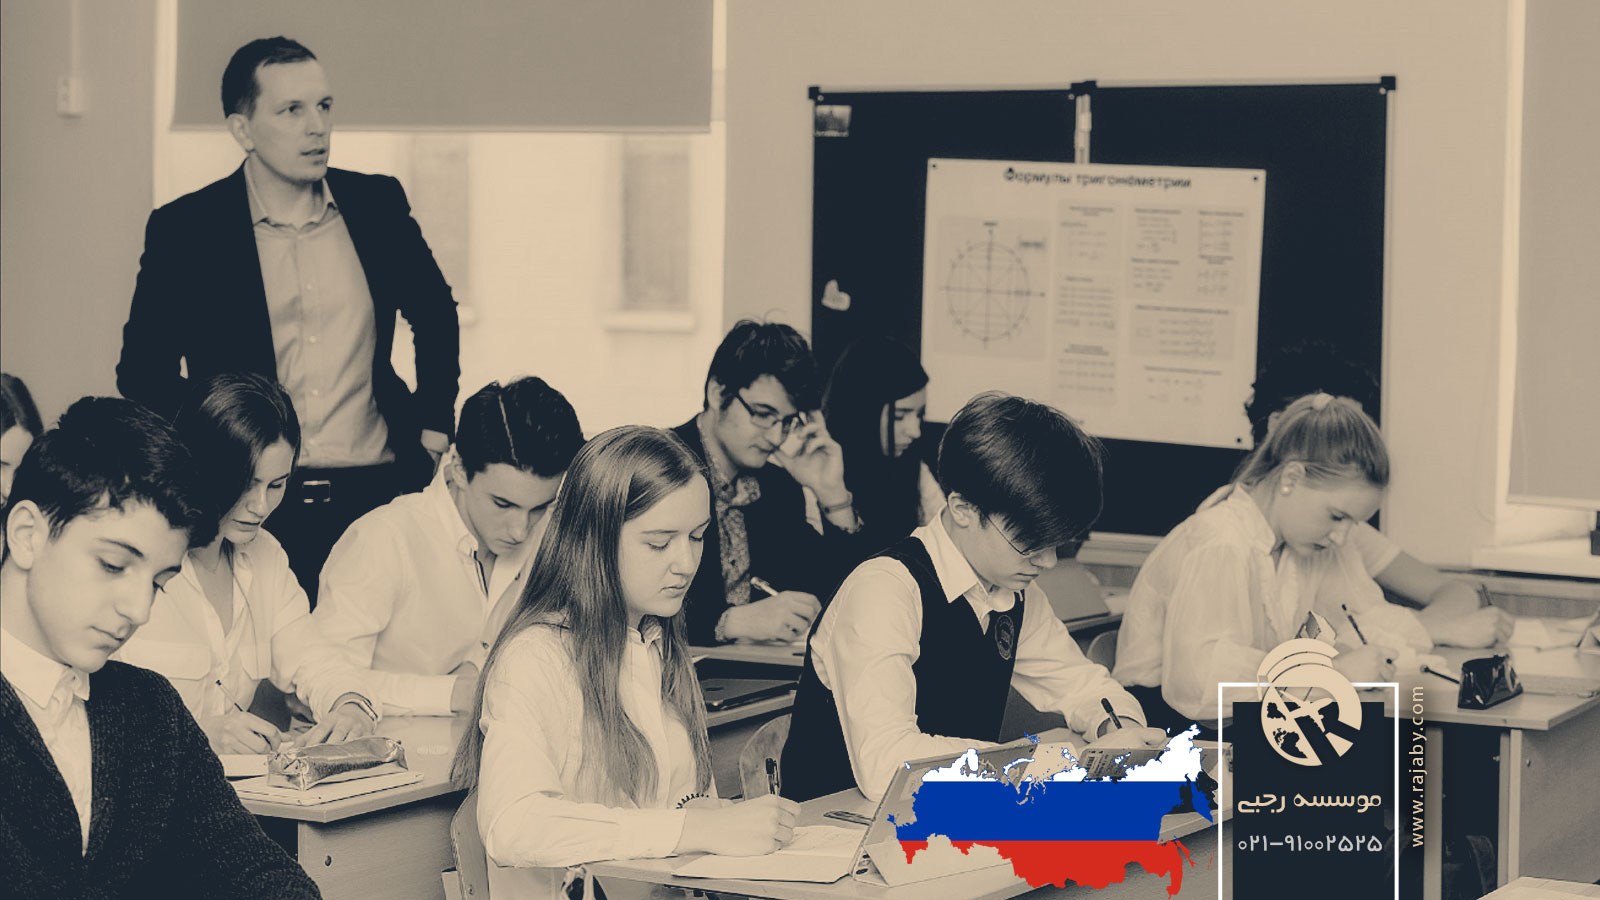 سیستم آموزشی در روسیه